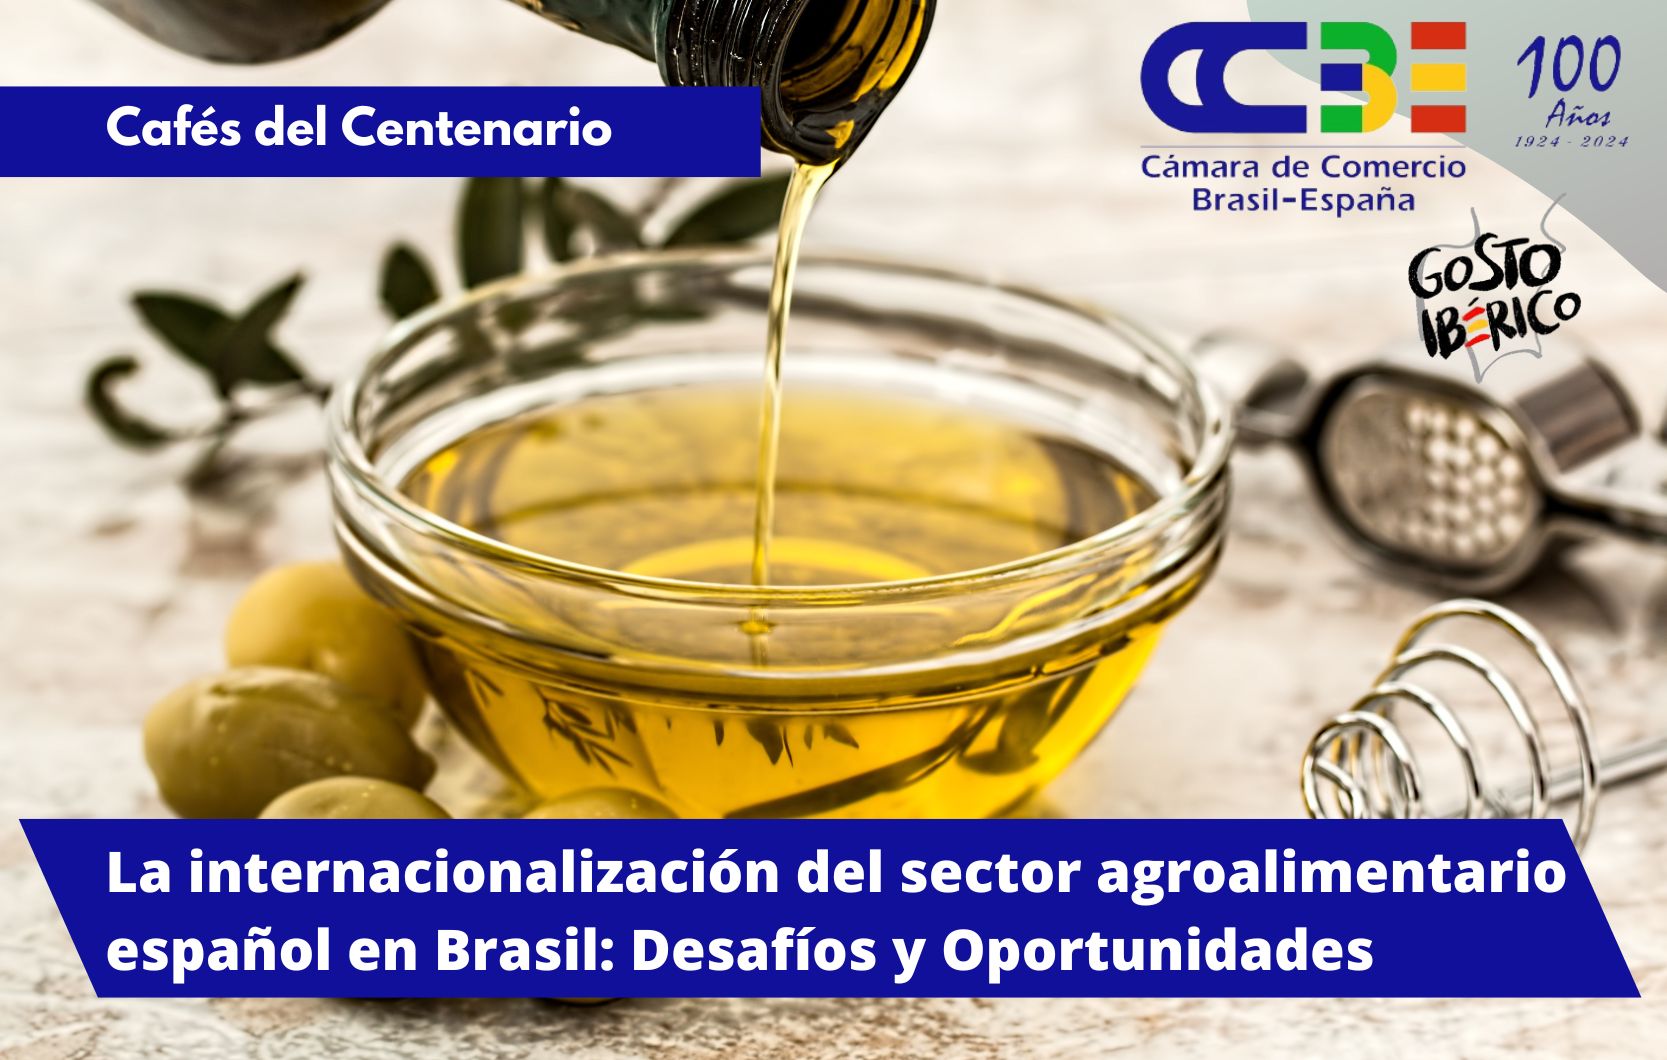 La internacionalización del sector agroalimentario español en Brasil: Desafíos y Oportunidades